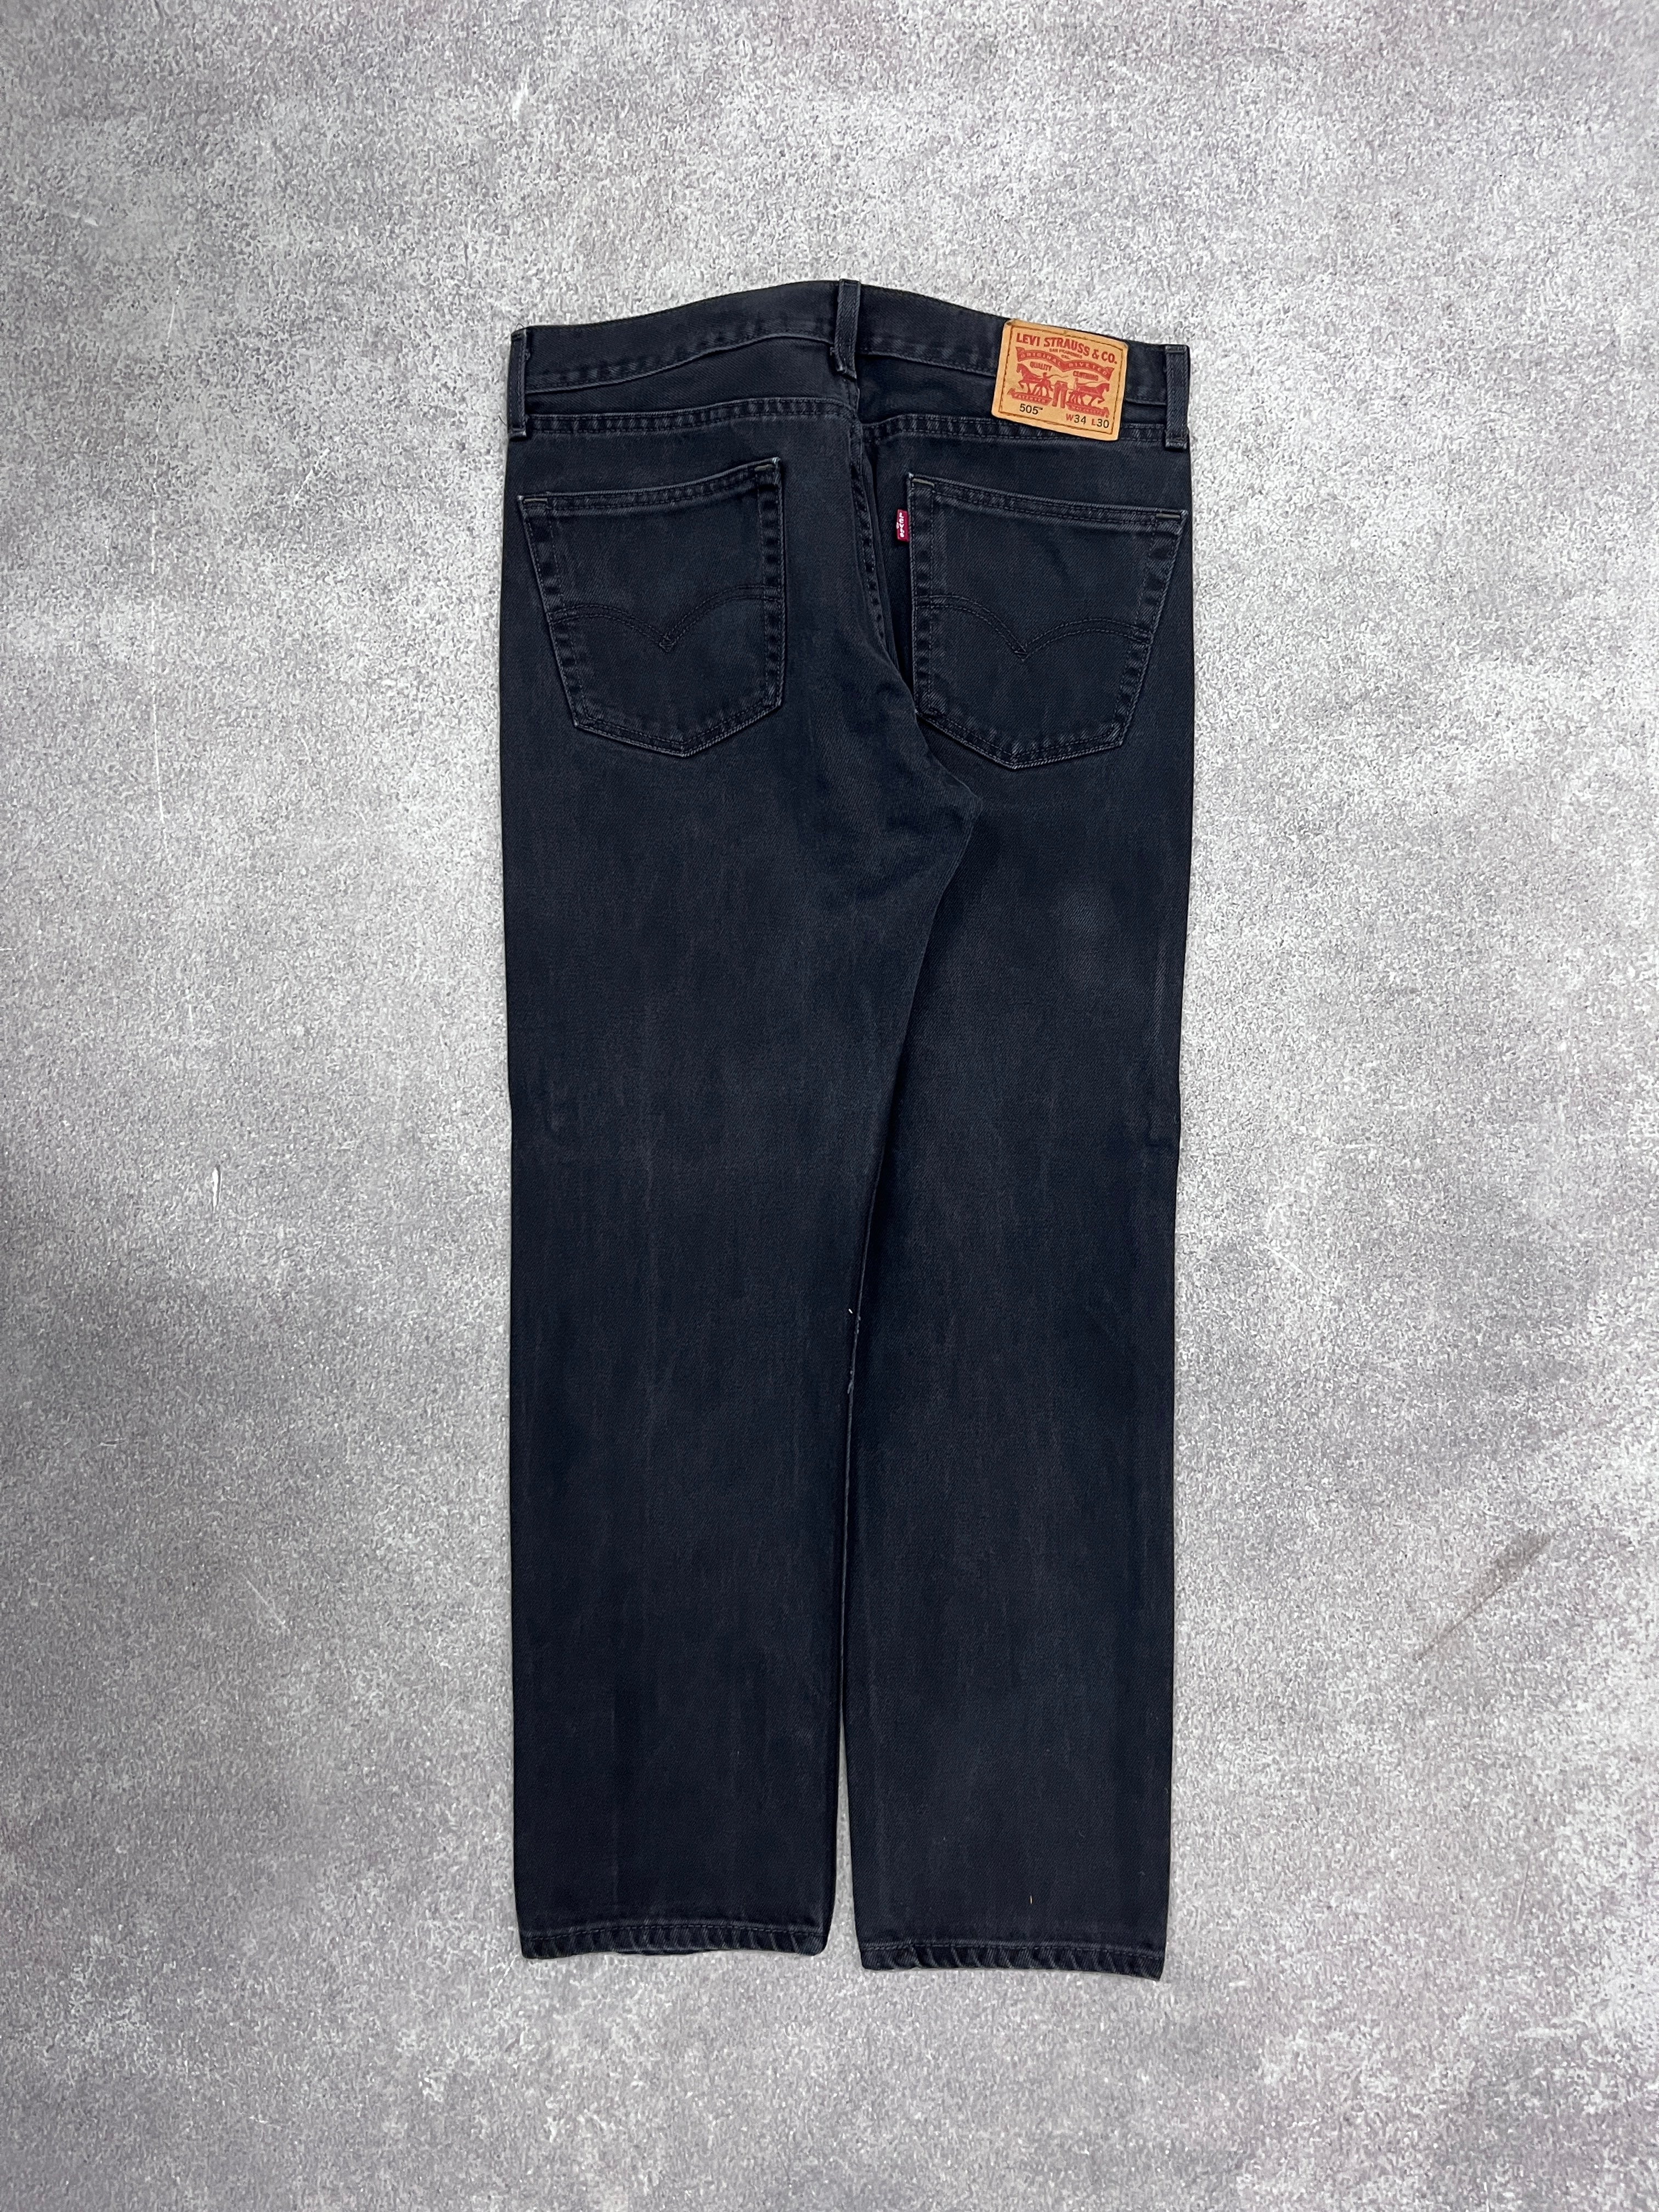 Vintage Levi 505 Denim Jeans // W34 L30 - RHAGHOUSE VINTAGE